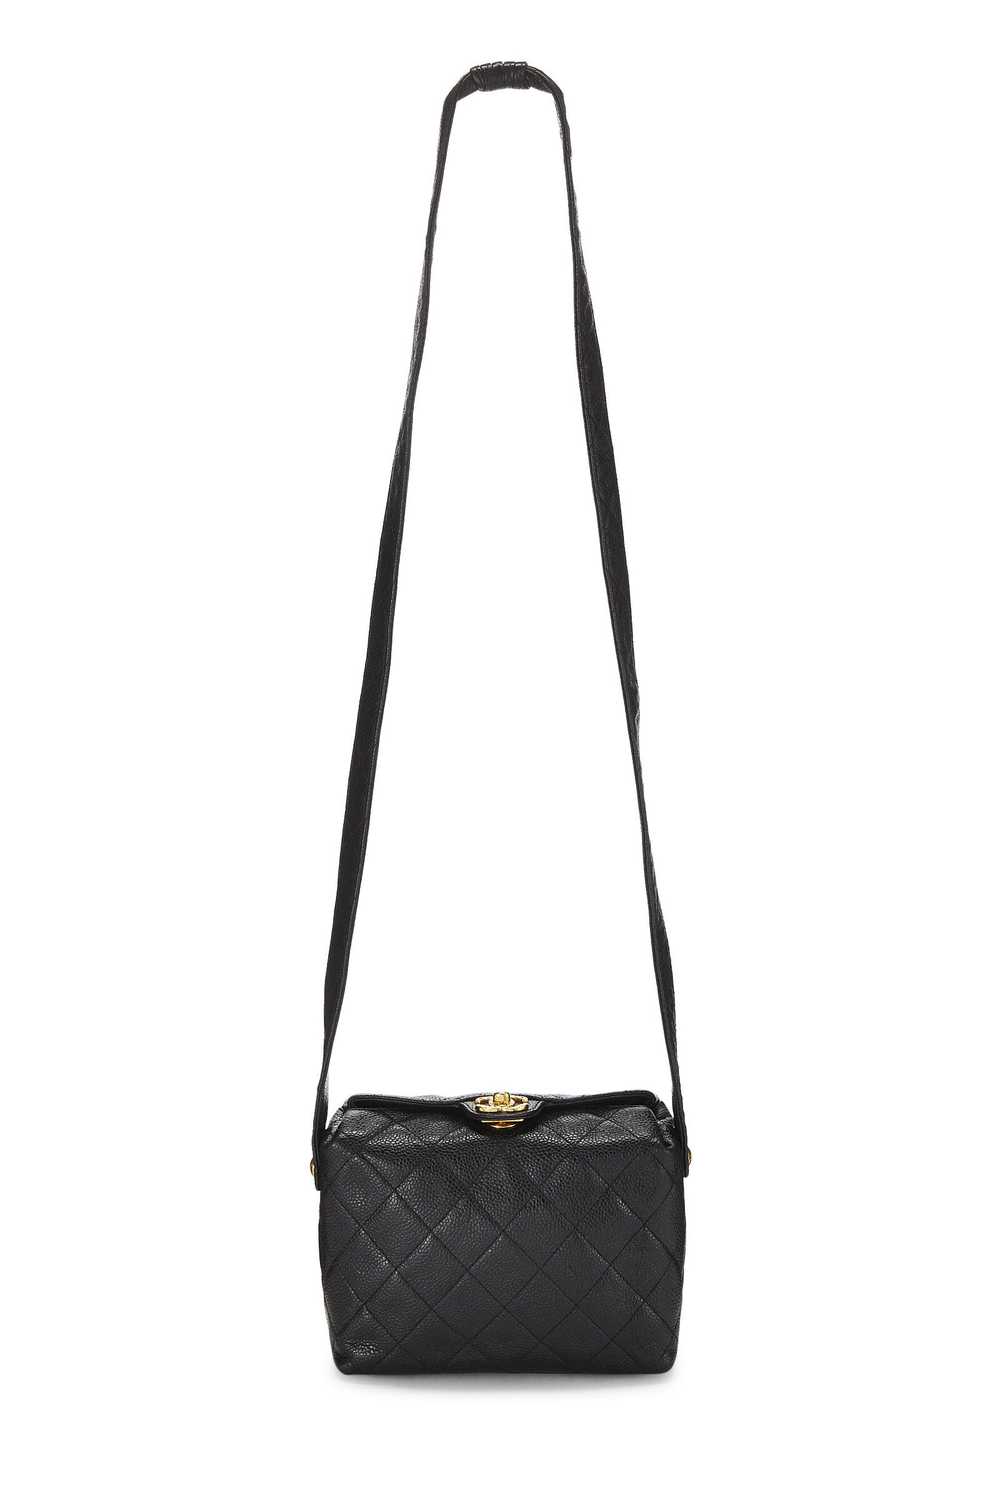 Black Caviar Shoulder Bag - image 2